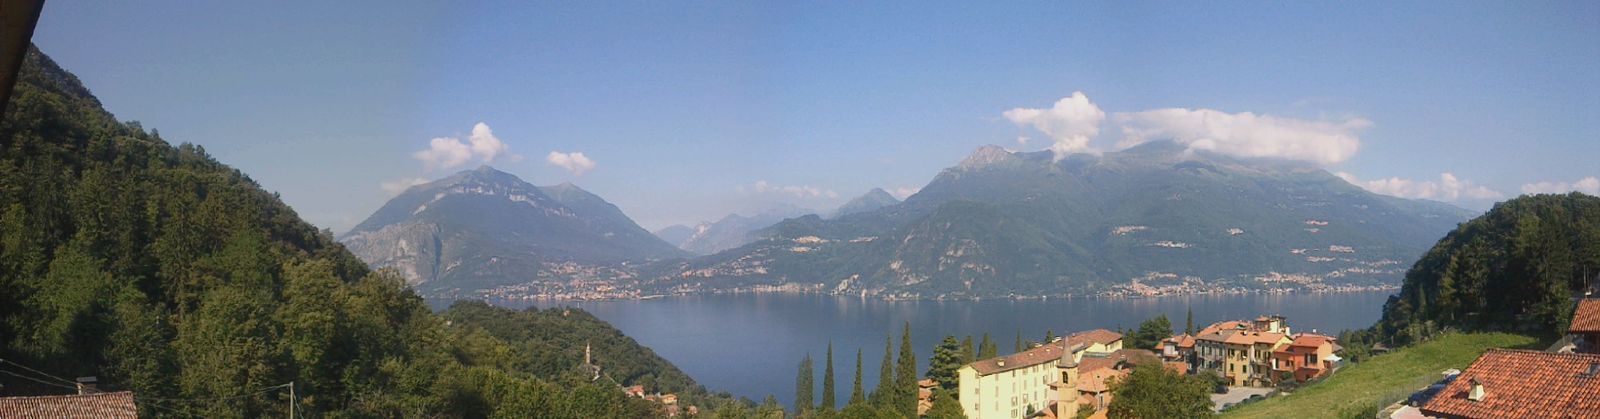 Lake Como - Italy